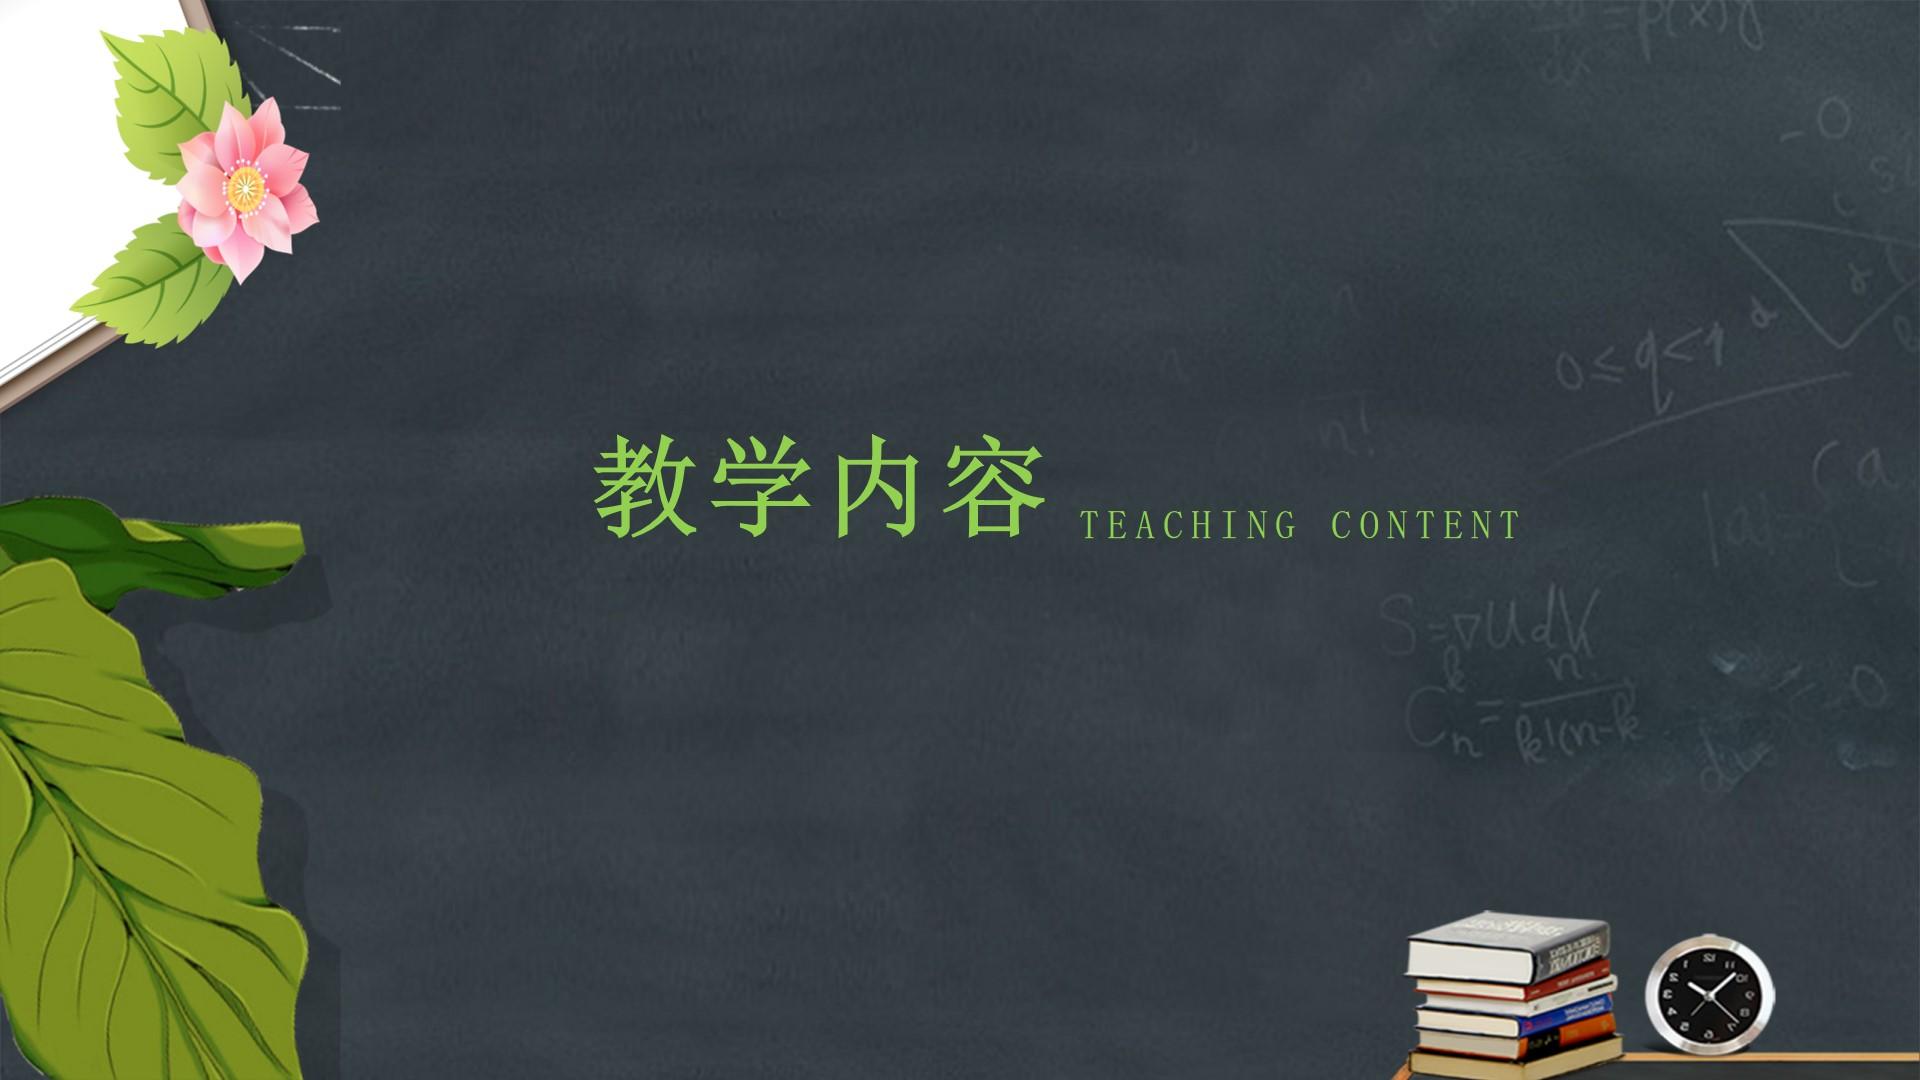 教育教学绿色黑色简洁硬朗teaching content云素材PPT模板1672466916514